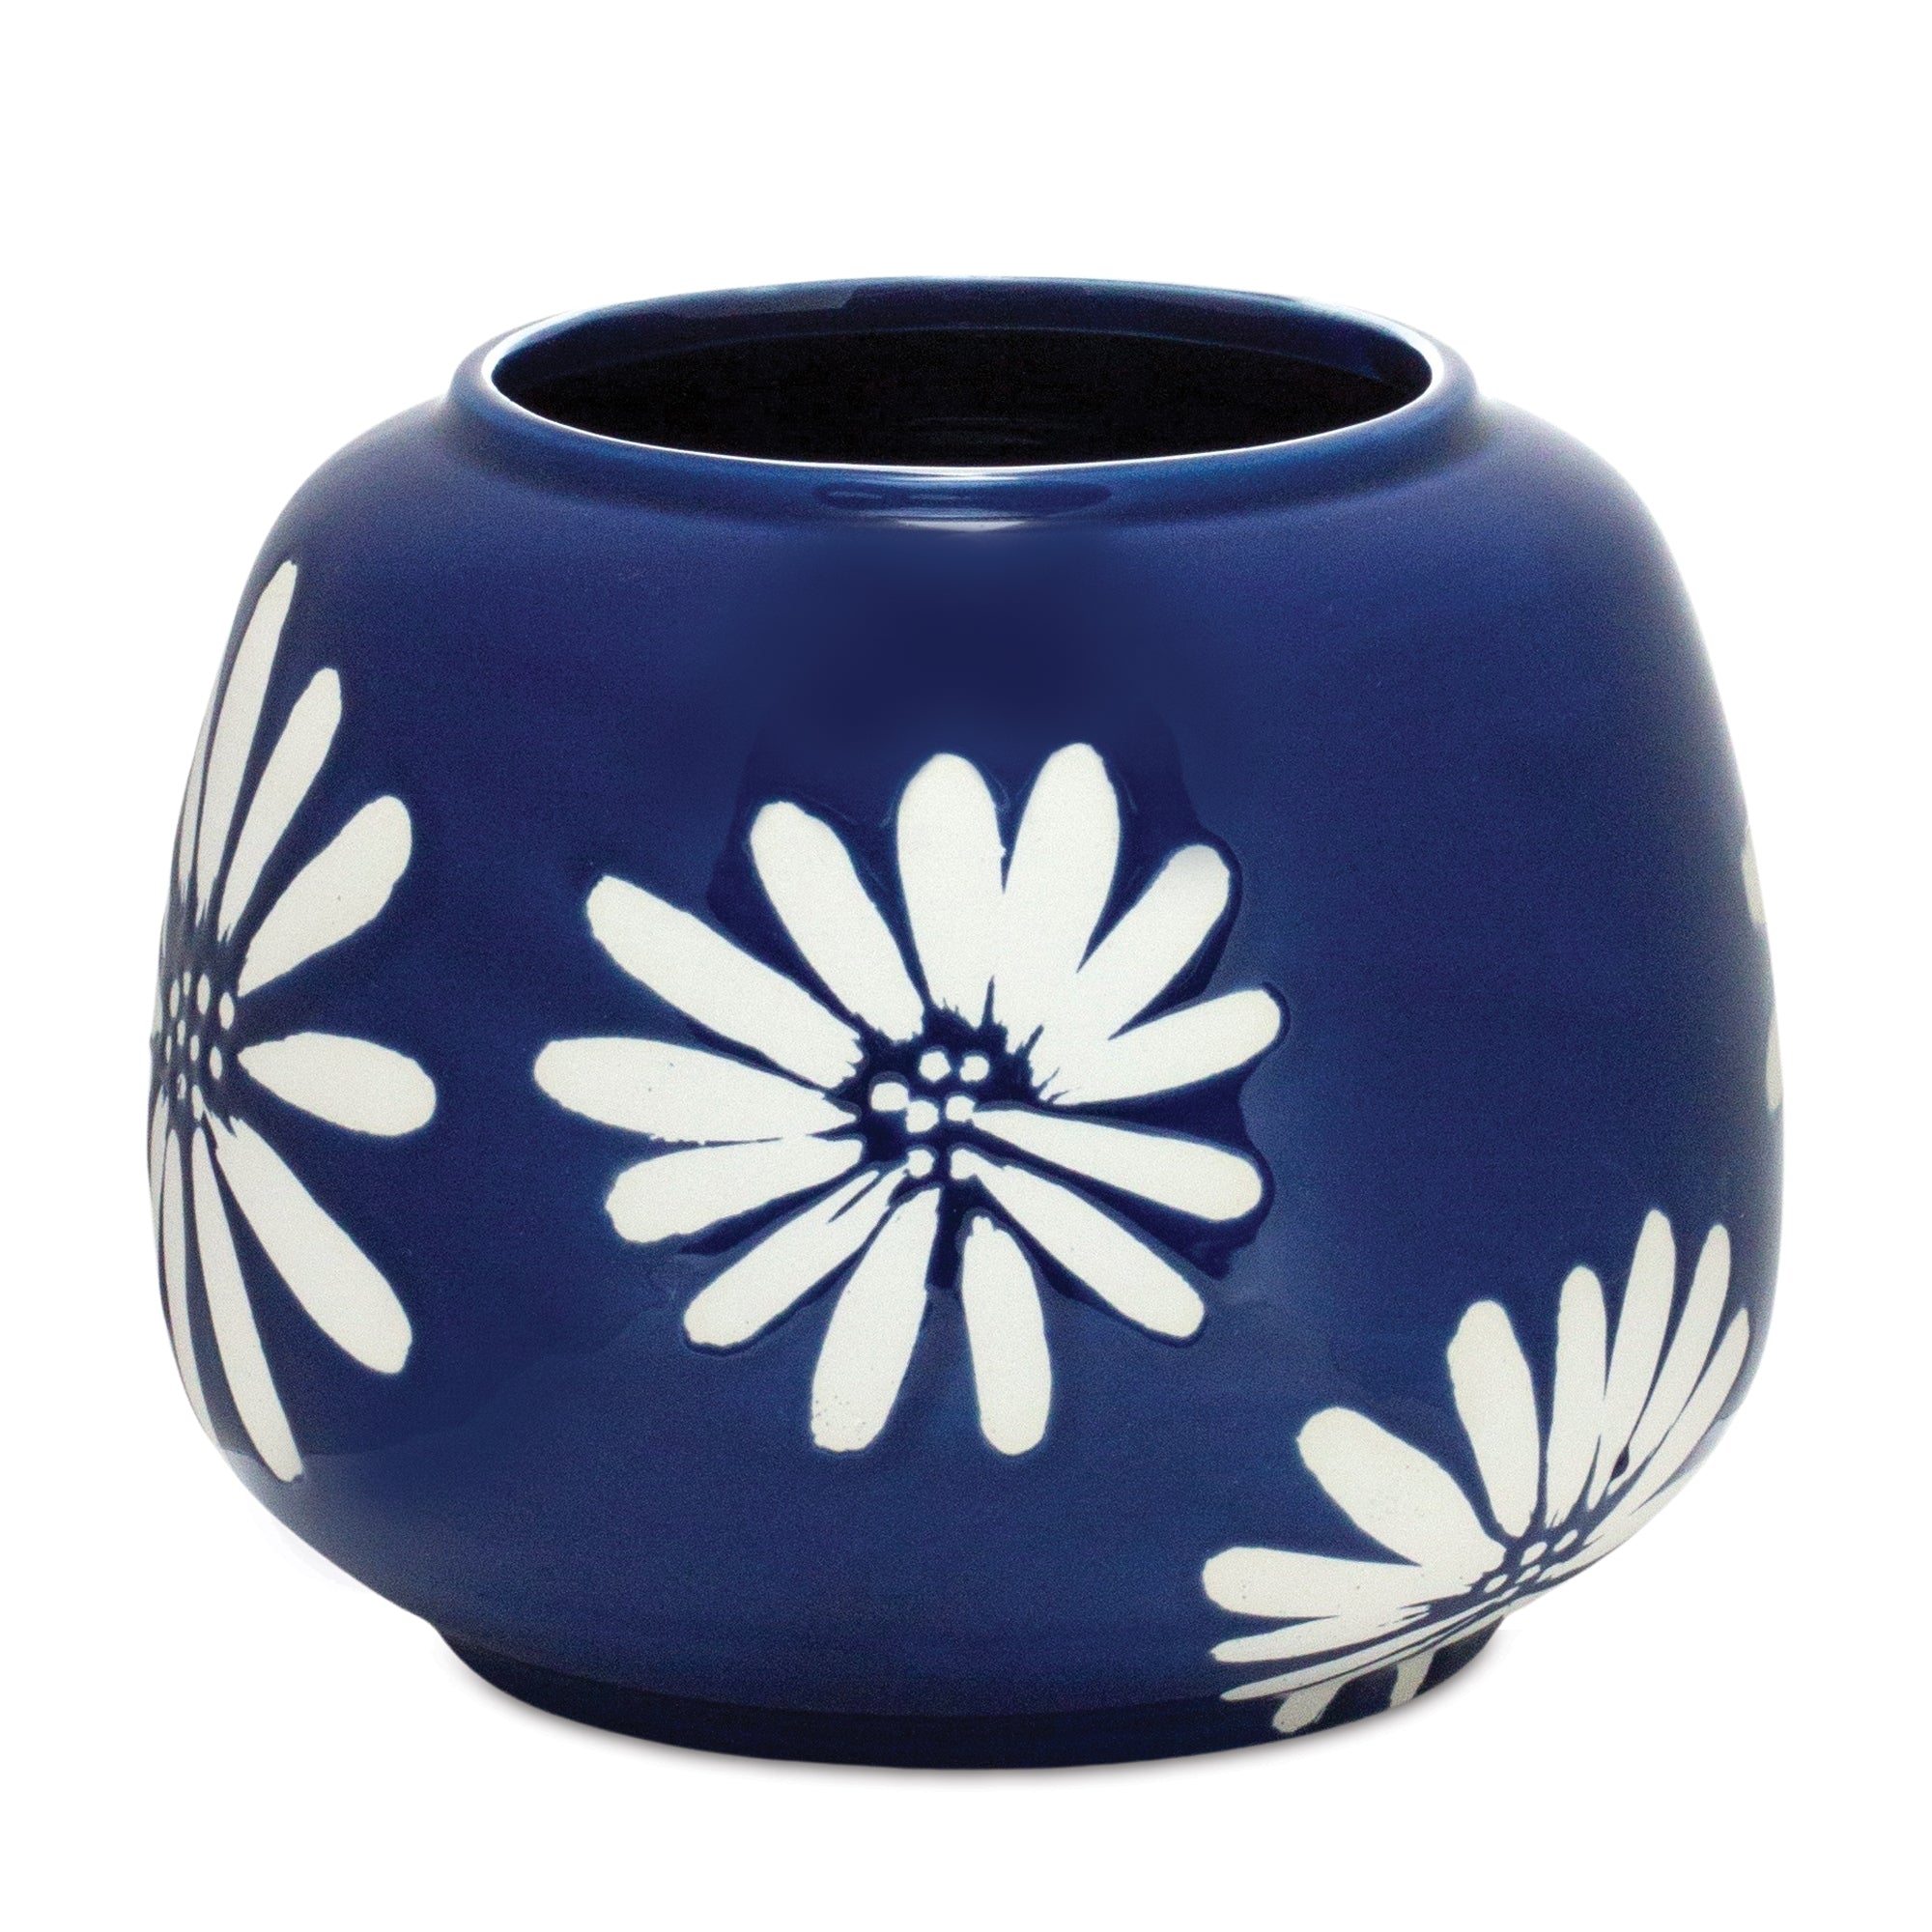 Daisy Flower Vase 5.5"H